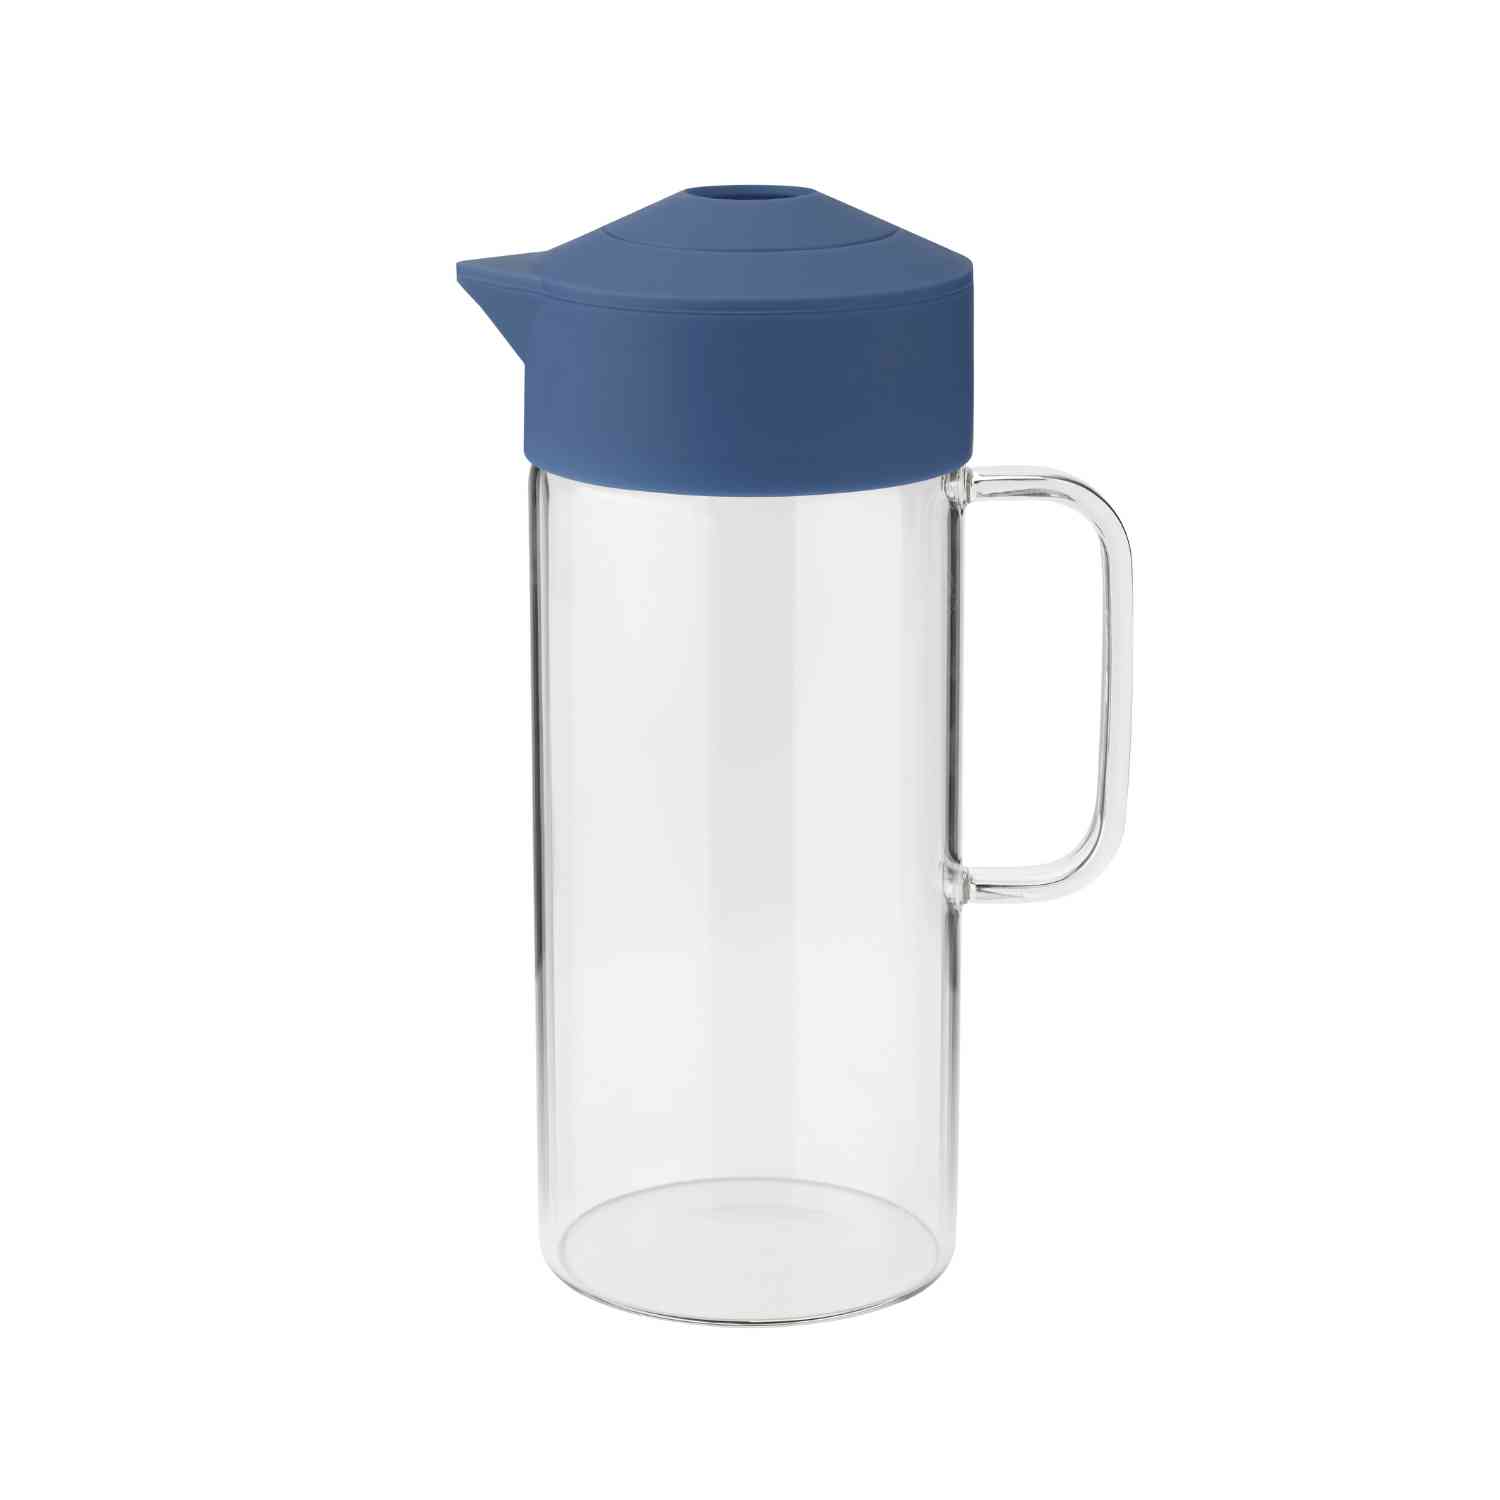 PIP serving jug 1.4L